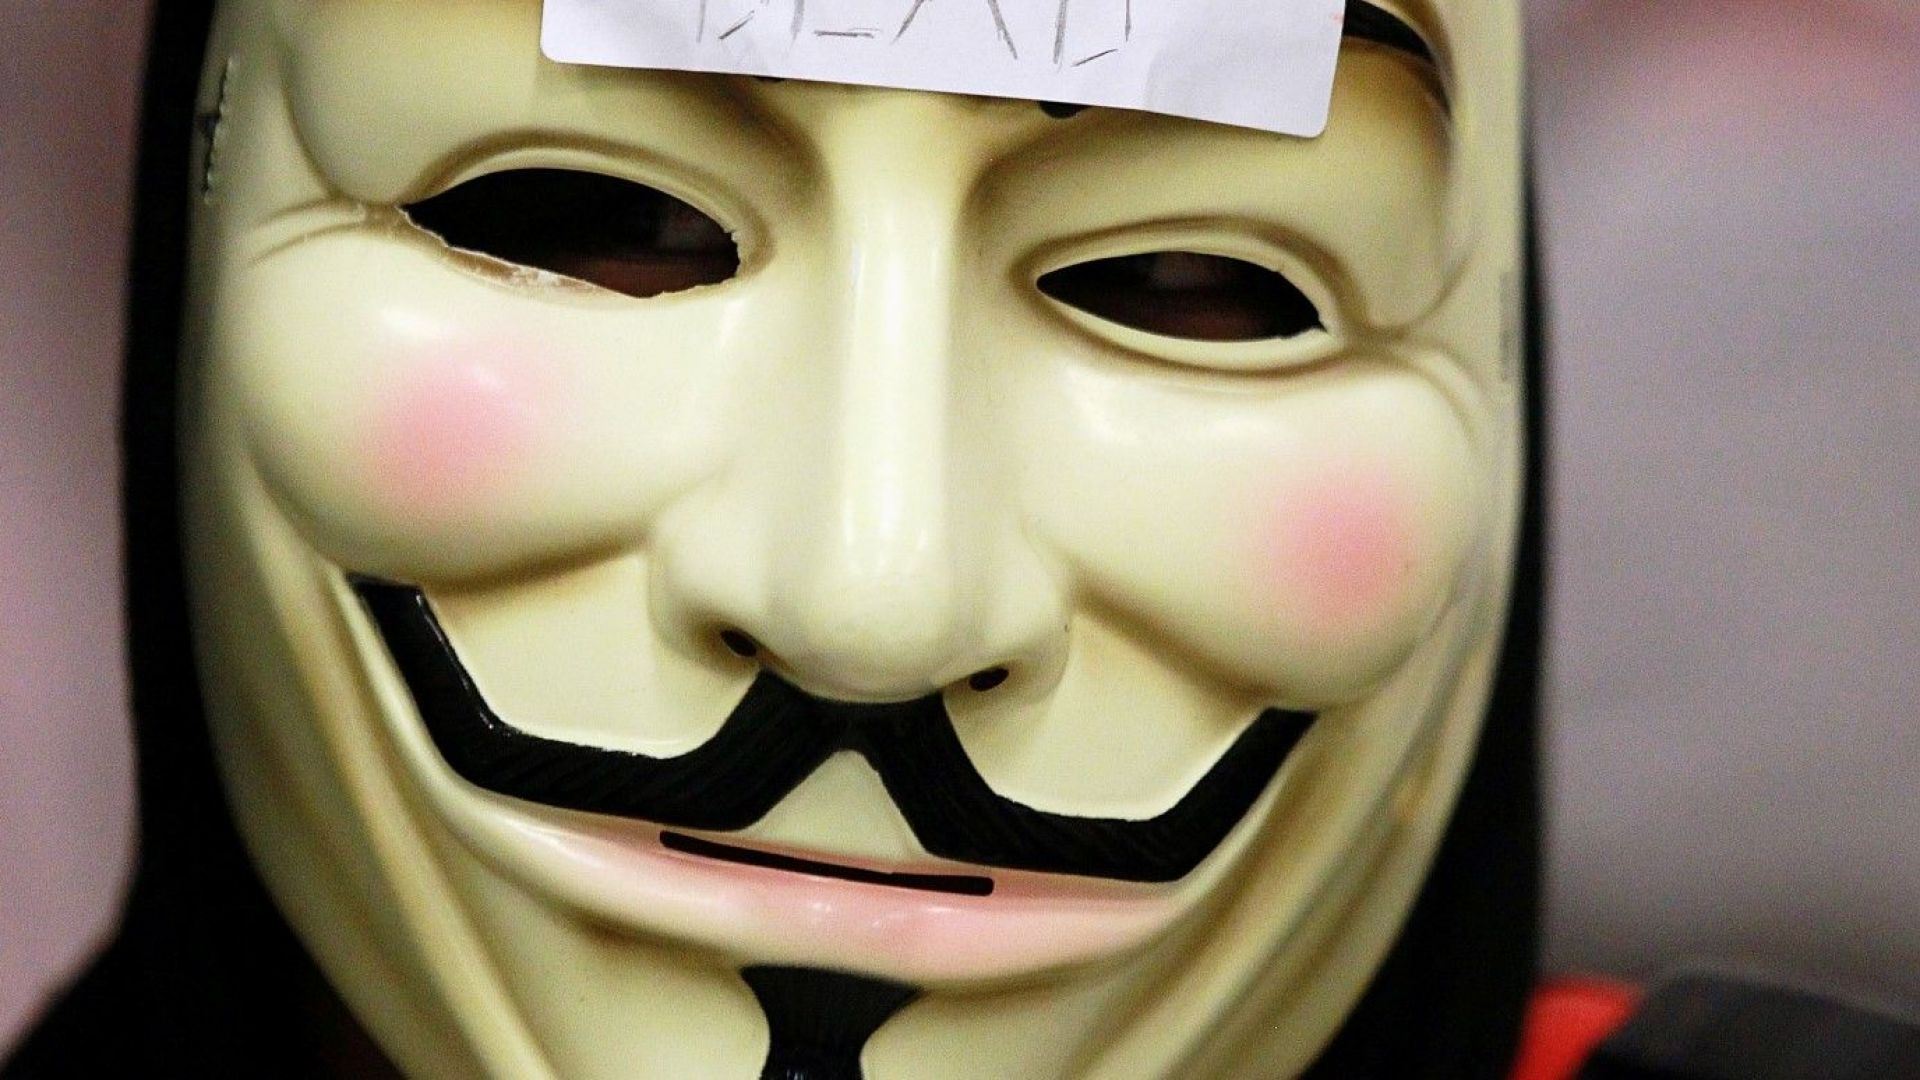 Хакерите от международната група Анонимните Anonymous призоваха да бъде освободен